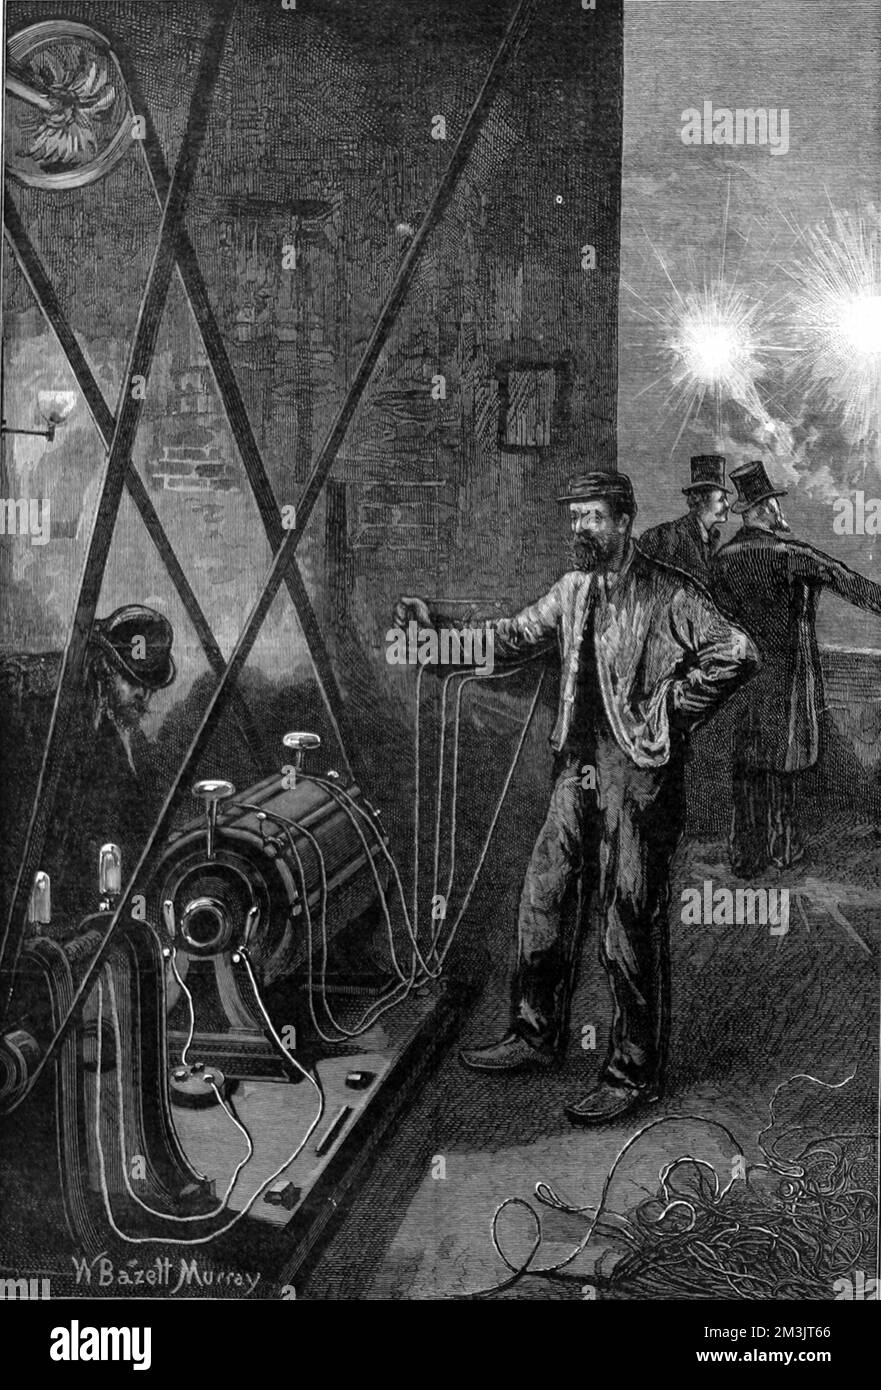 Grammes Gleichstrom-Dynamo. Zenobe Theophile Gramme (1826 - 1901) baute 1869 den ersten erfolgreichen Dynamo mit einem Ringanker („Gramme Ring“), den er nach verschiedenen Verbesserungen 1871 herstellte. Es war der erste elektrische Generator, der kommerziell für die Galvanisierung sowie für die elektrische Beleuchtung eingesetzt wurde. Stockfoto